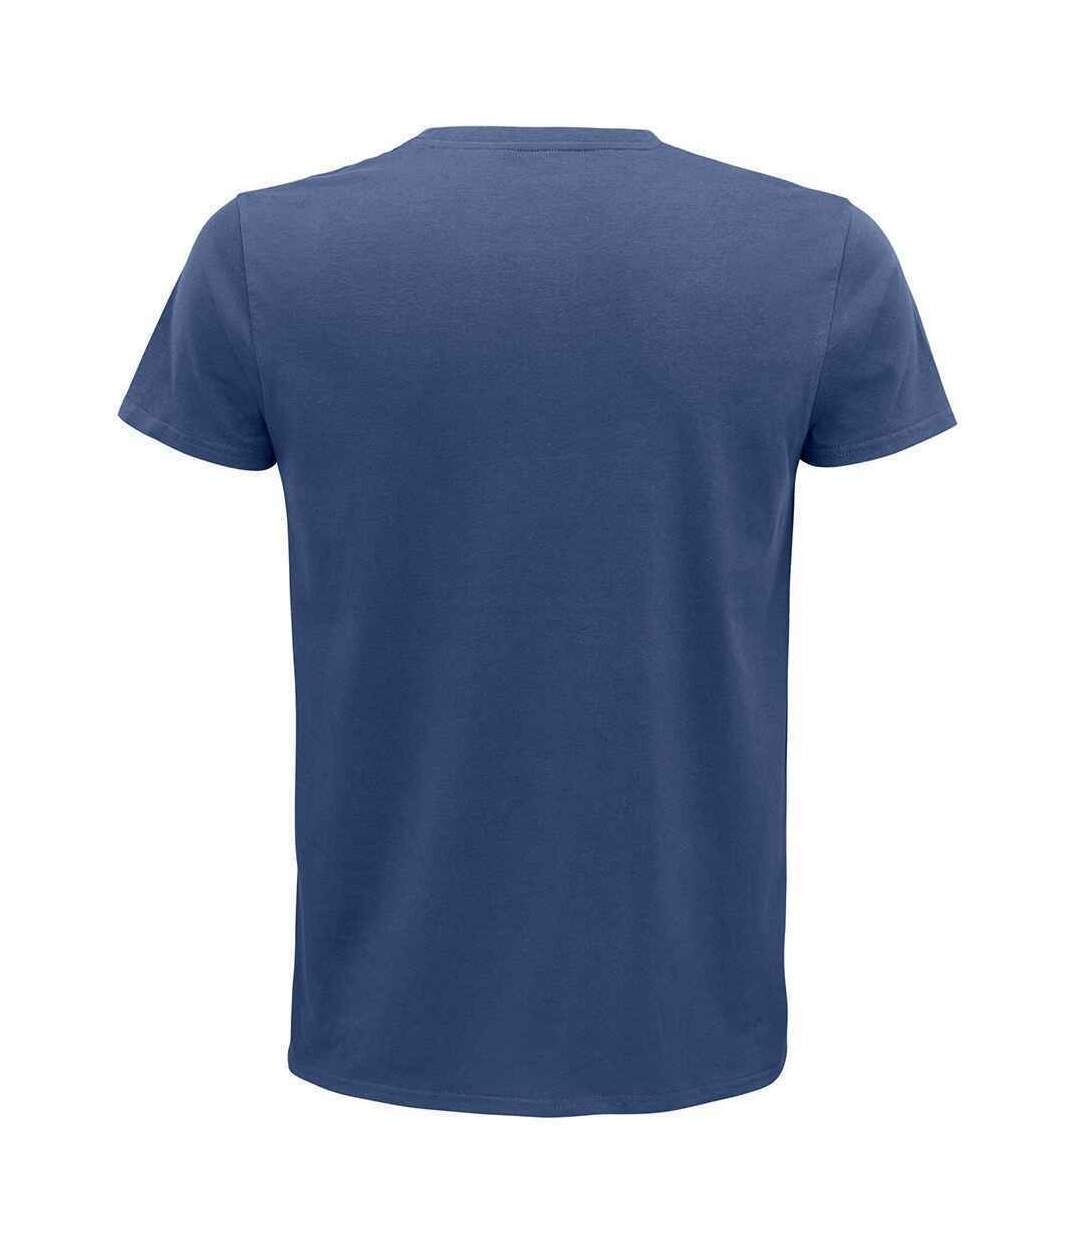 SOLS - T-shirt organique PIONEER - Adulte (Denim) - UTPC4371